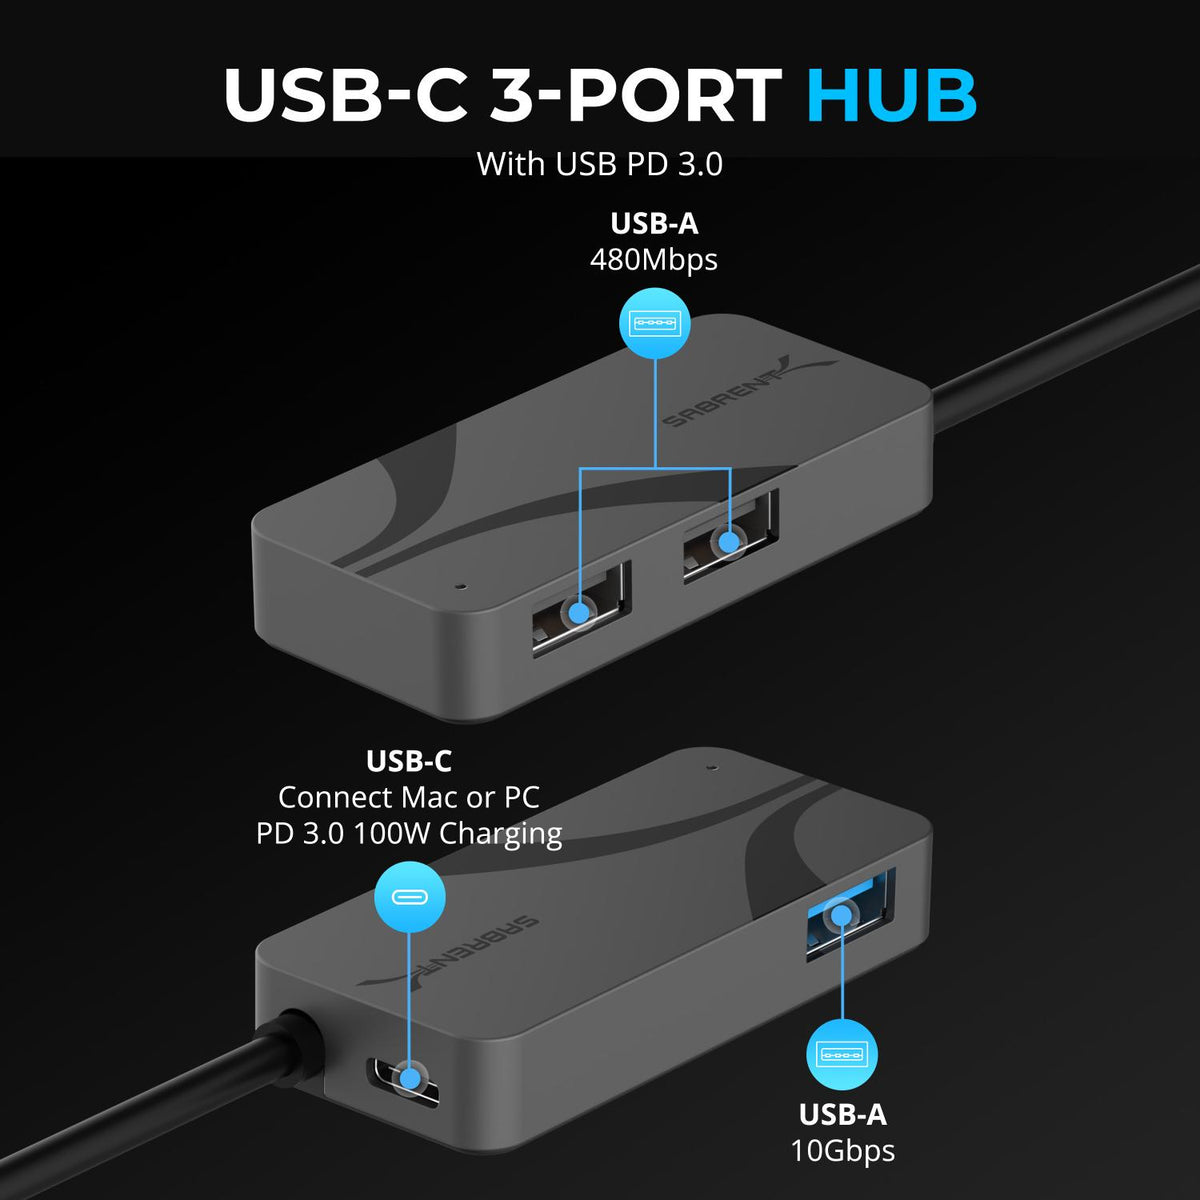 USB-C 3-Port Hub